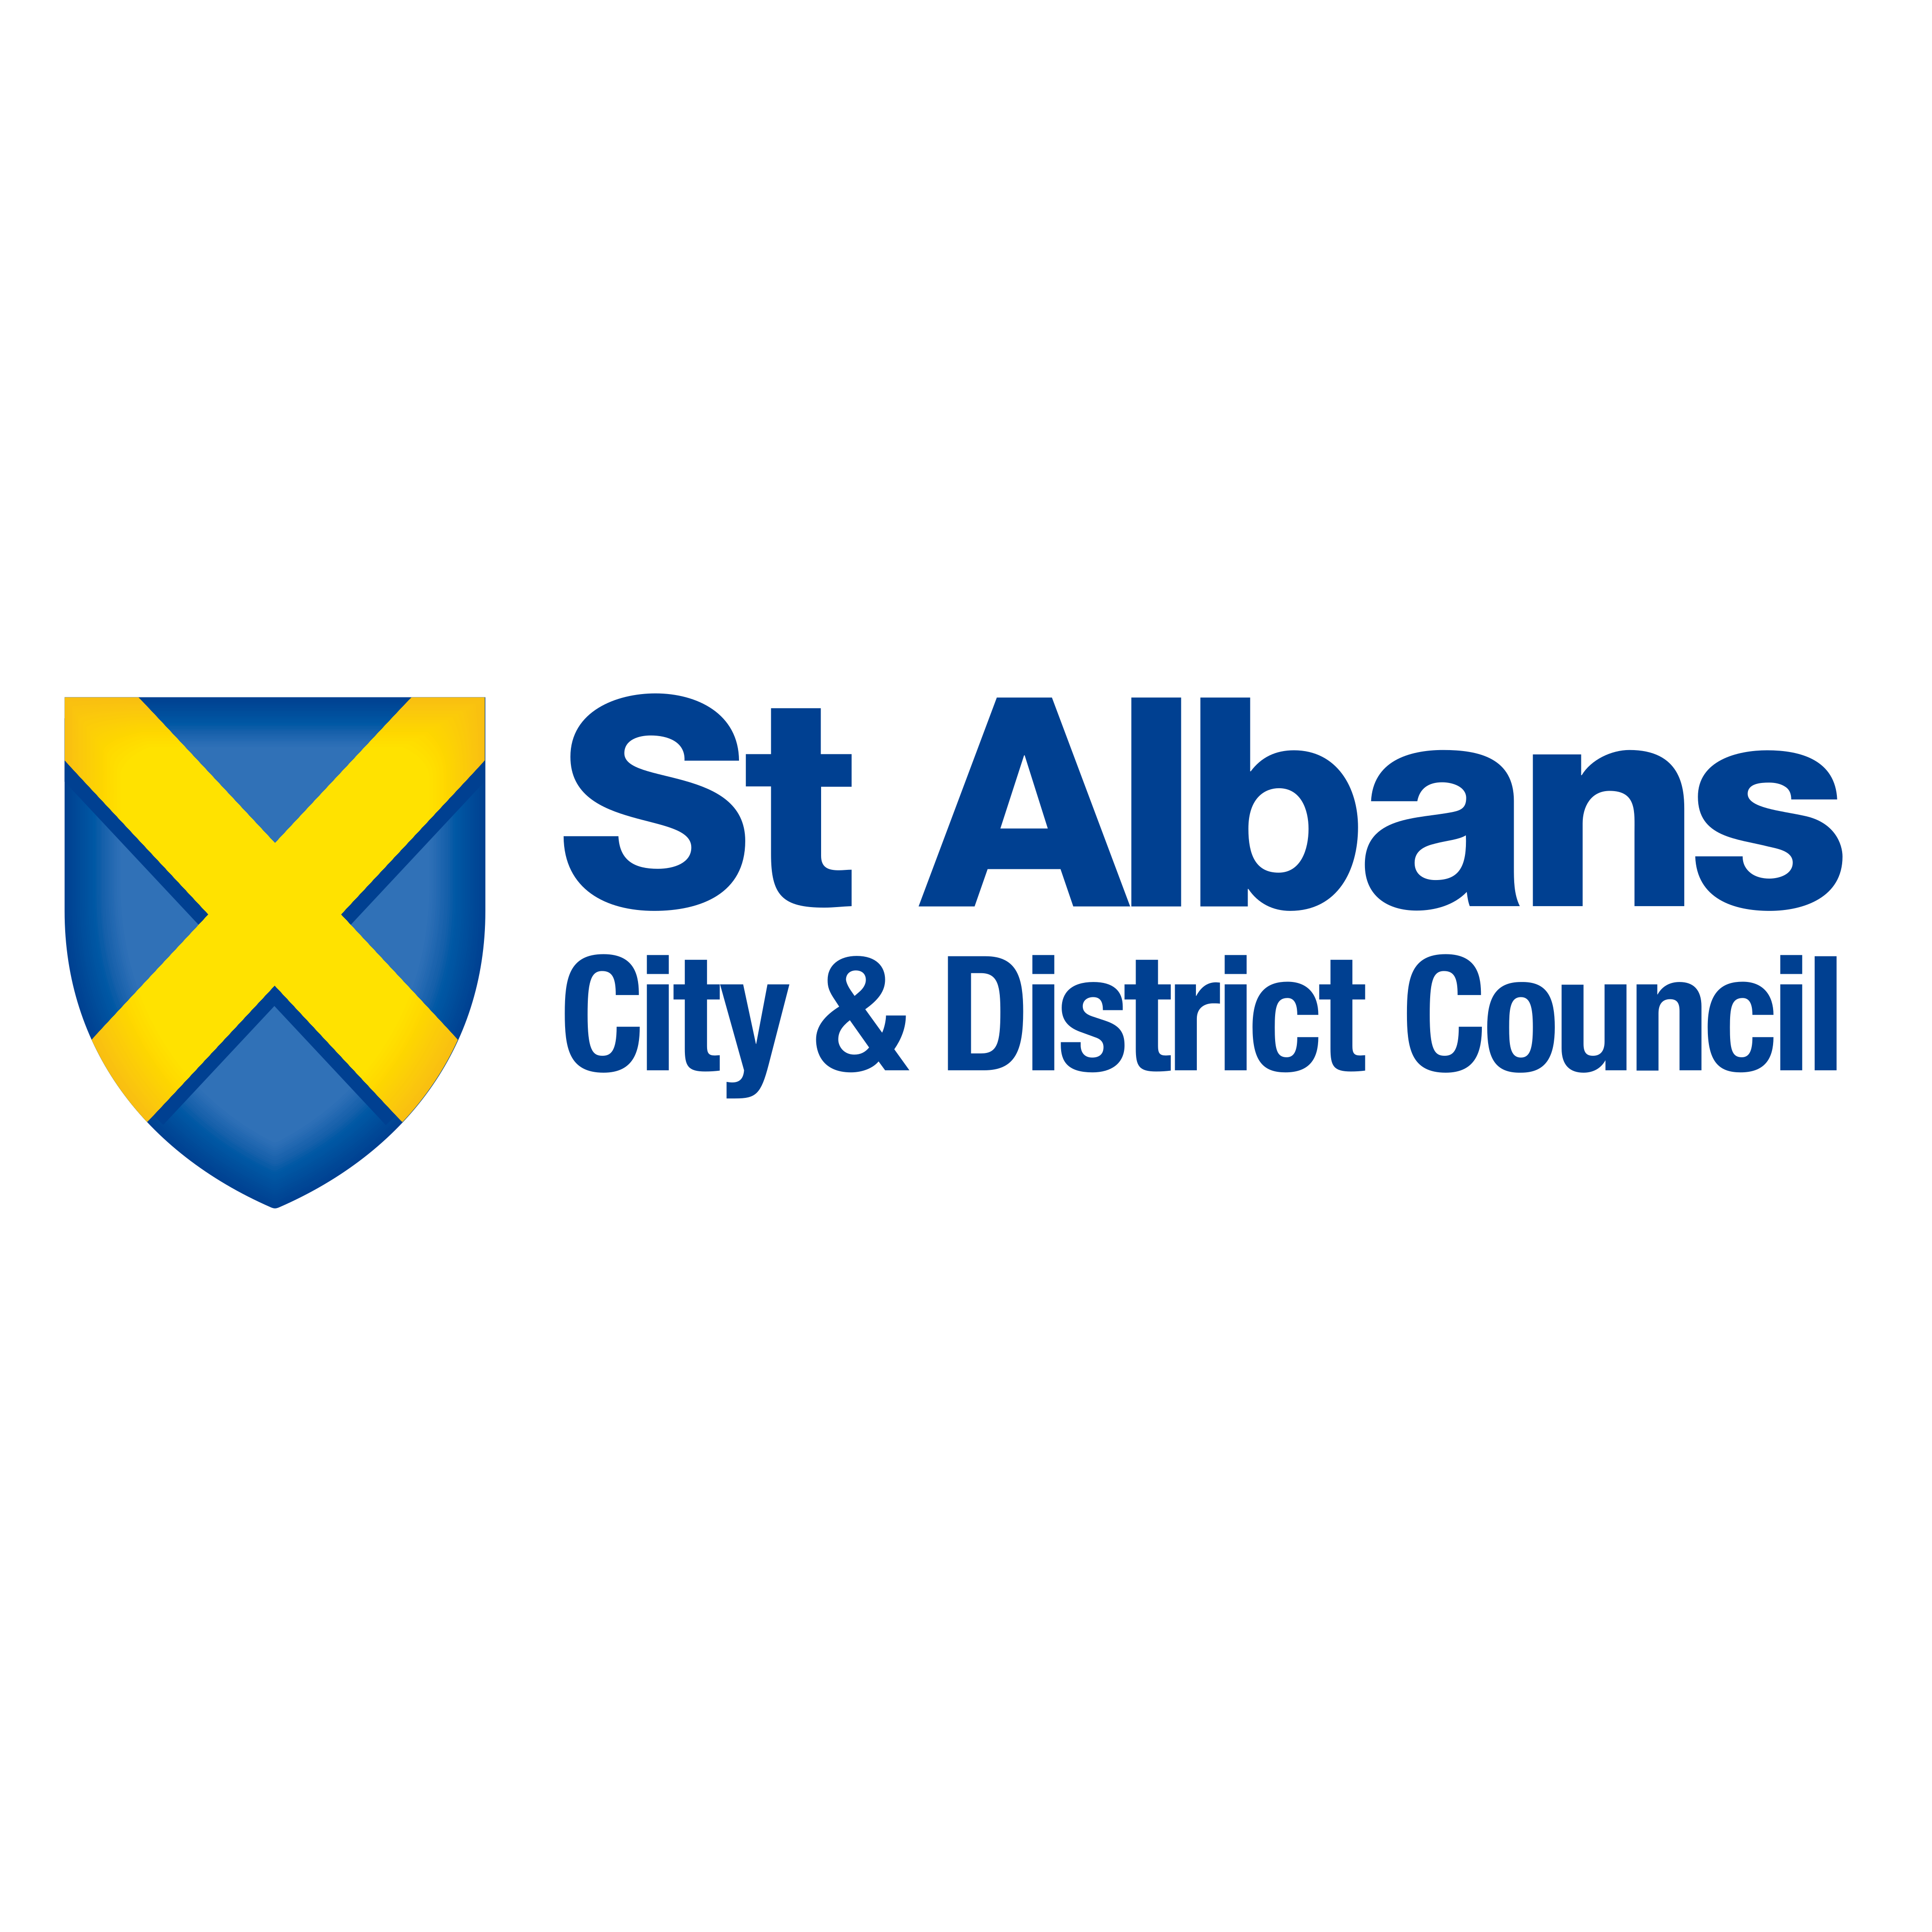 St. Albans City & District Council logo - download.